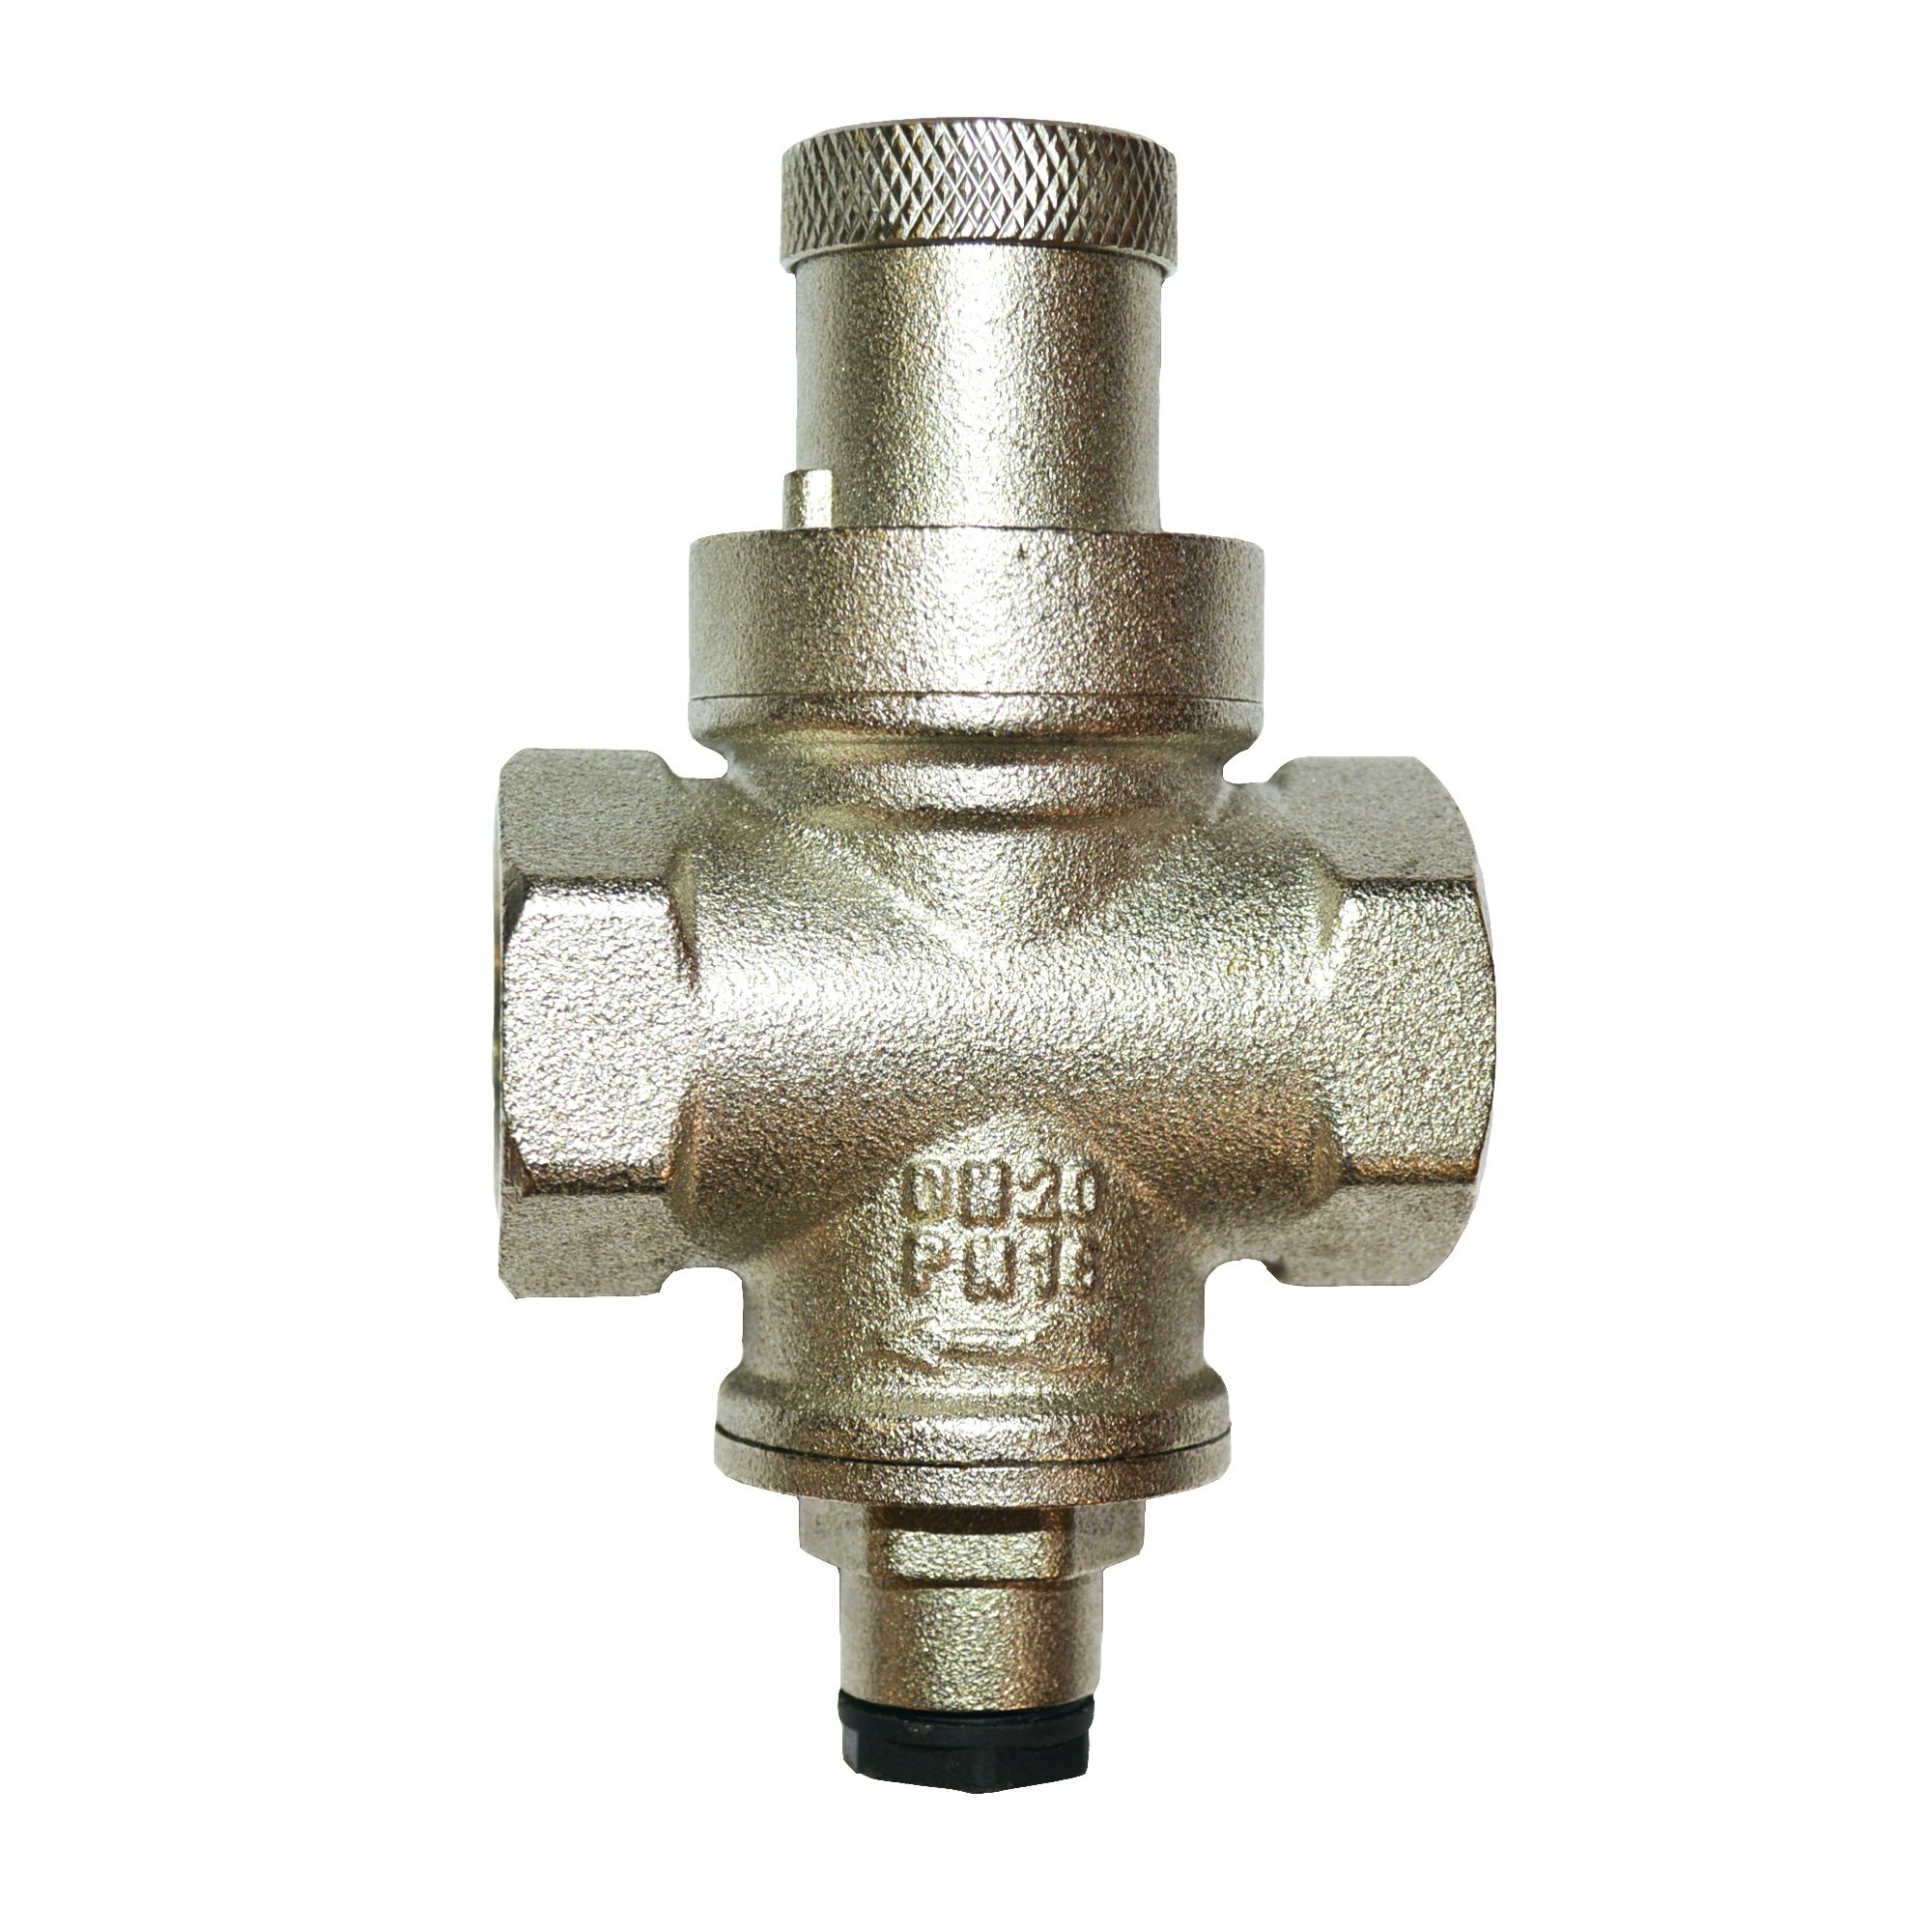 Редуктор давления для водопровода под манометр 1/2 J.G. 501 J.G. - 1